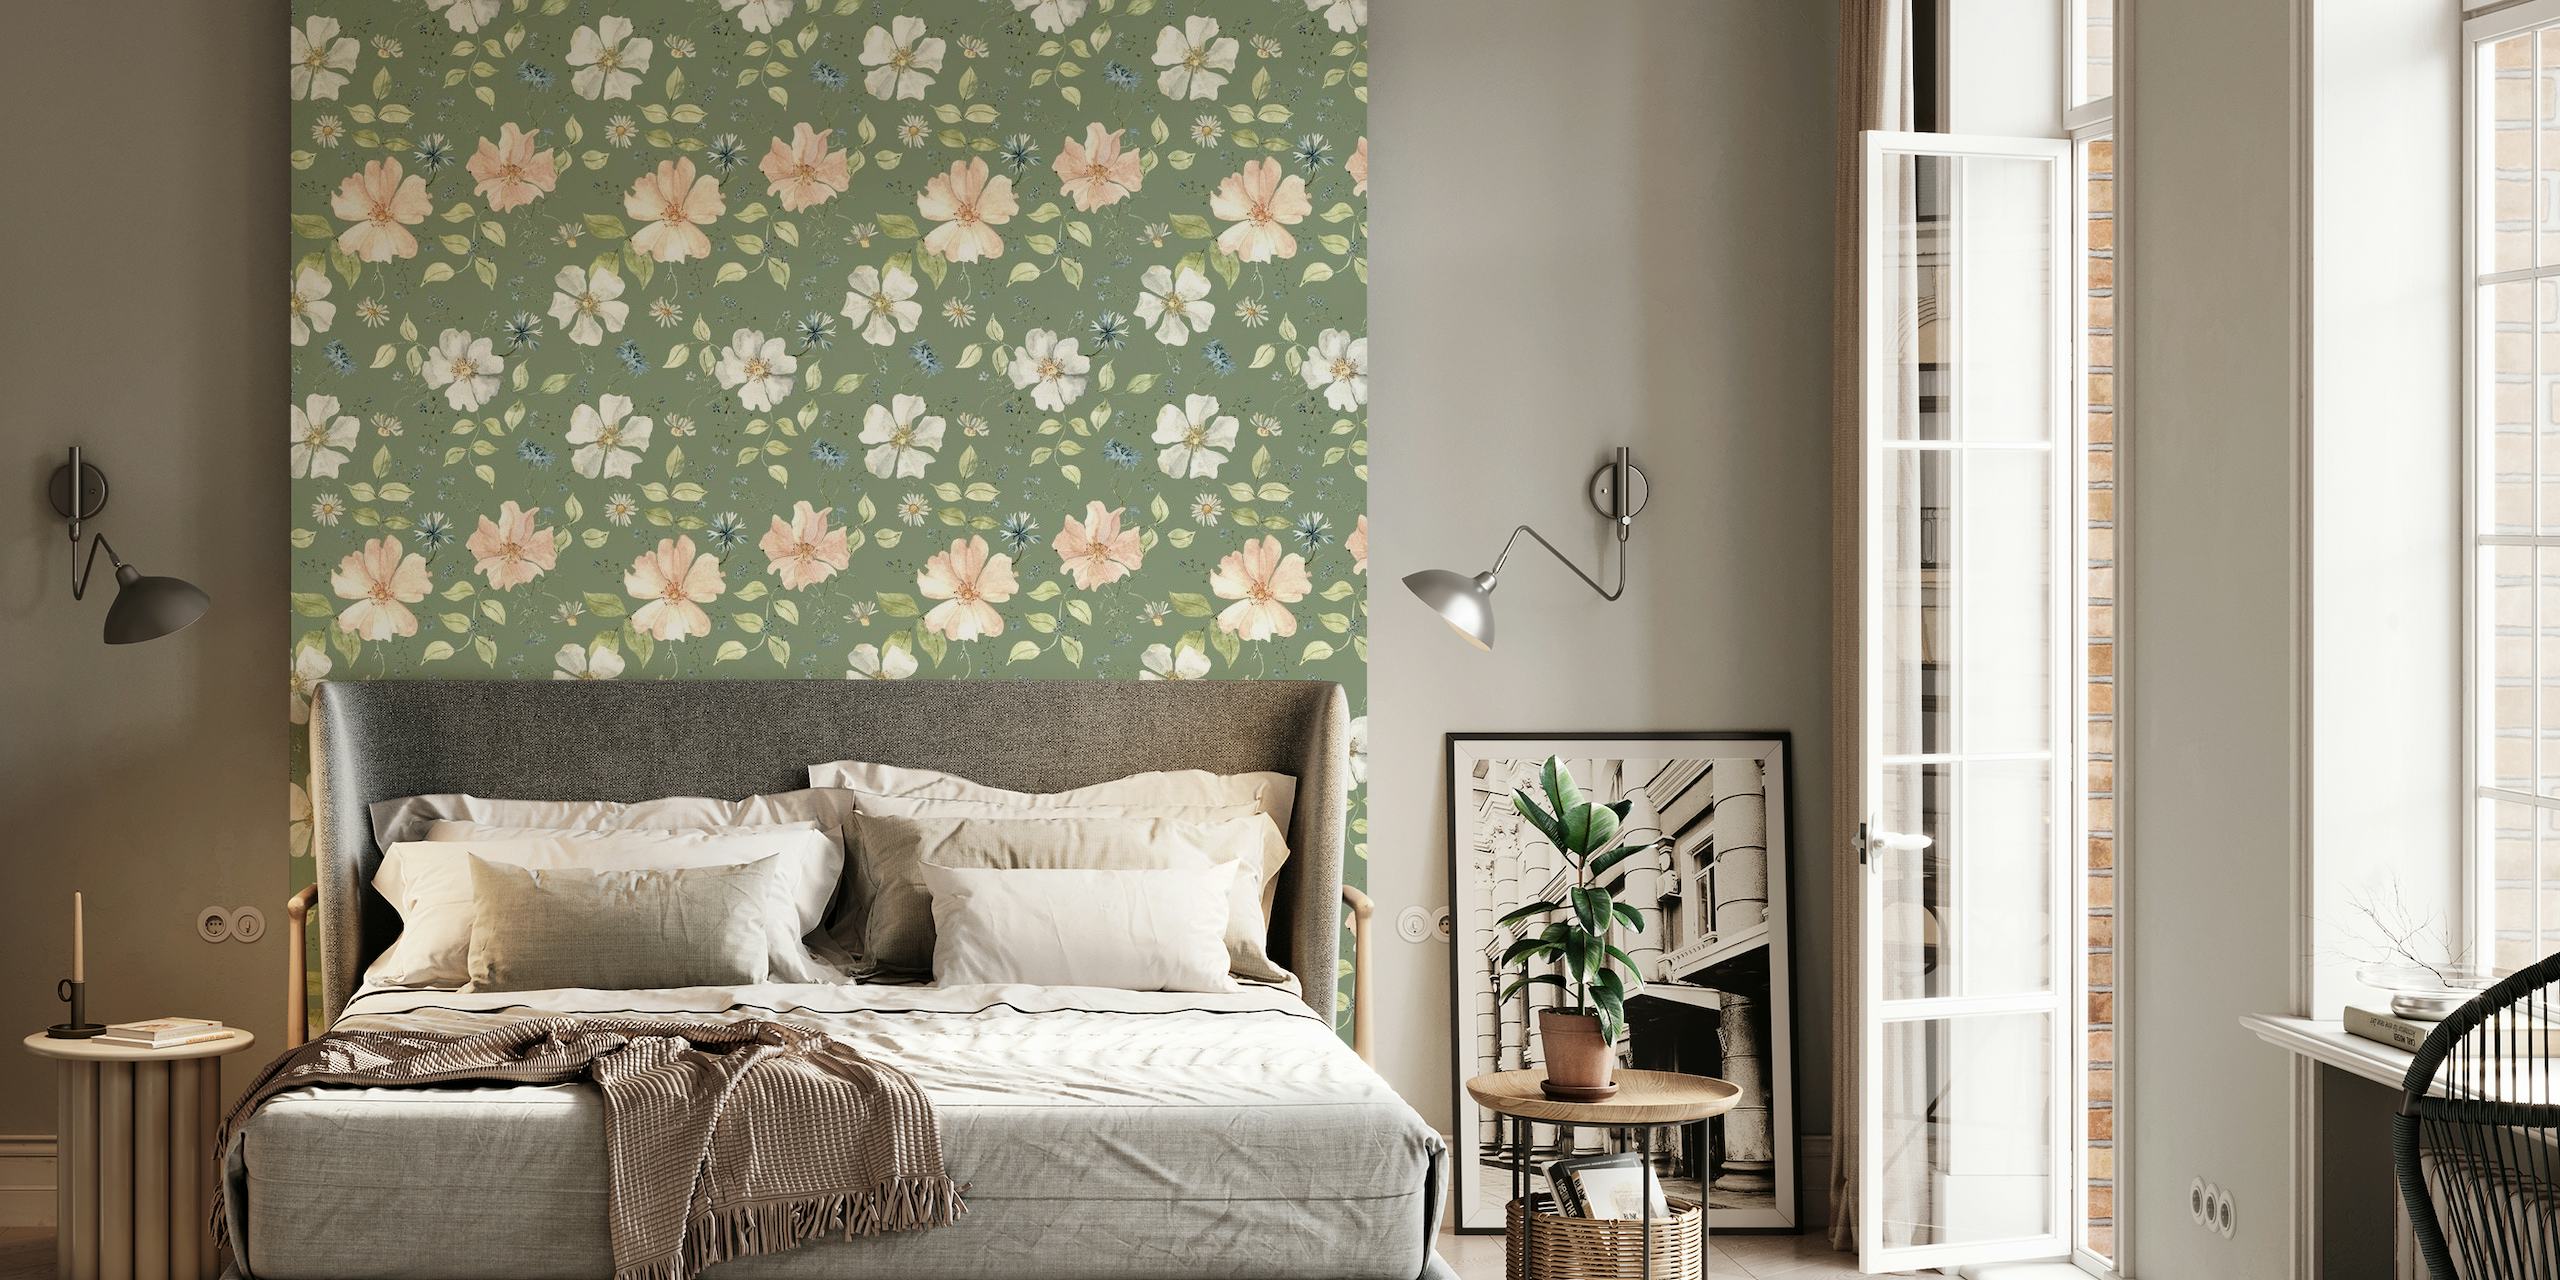 Idyllinen ja kukkavihreä seinämaalaus, jossa herkät kukat rauhoittavalla vihreällä taustalla